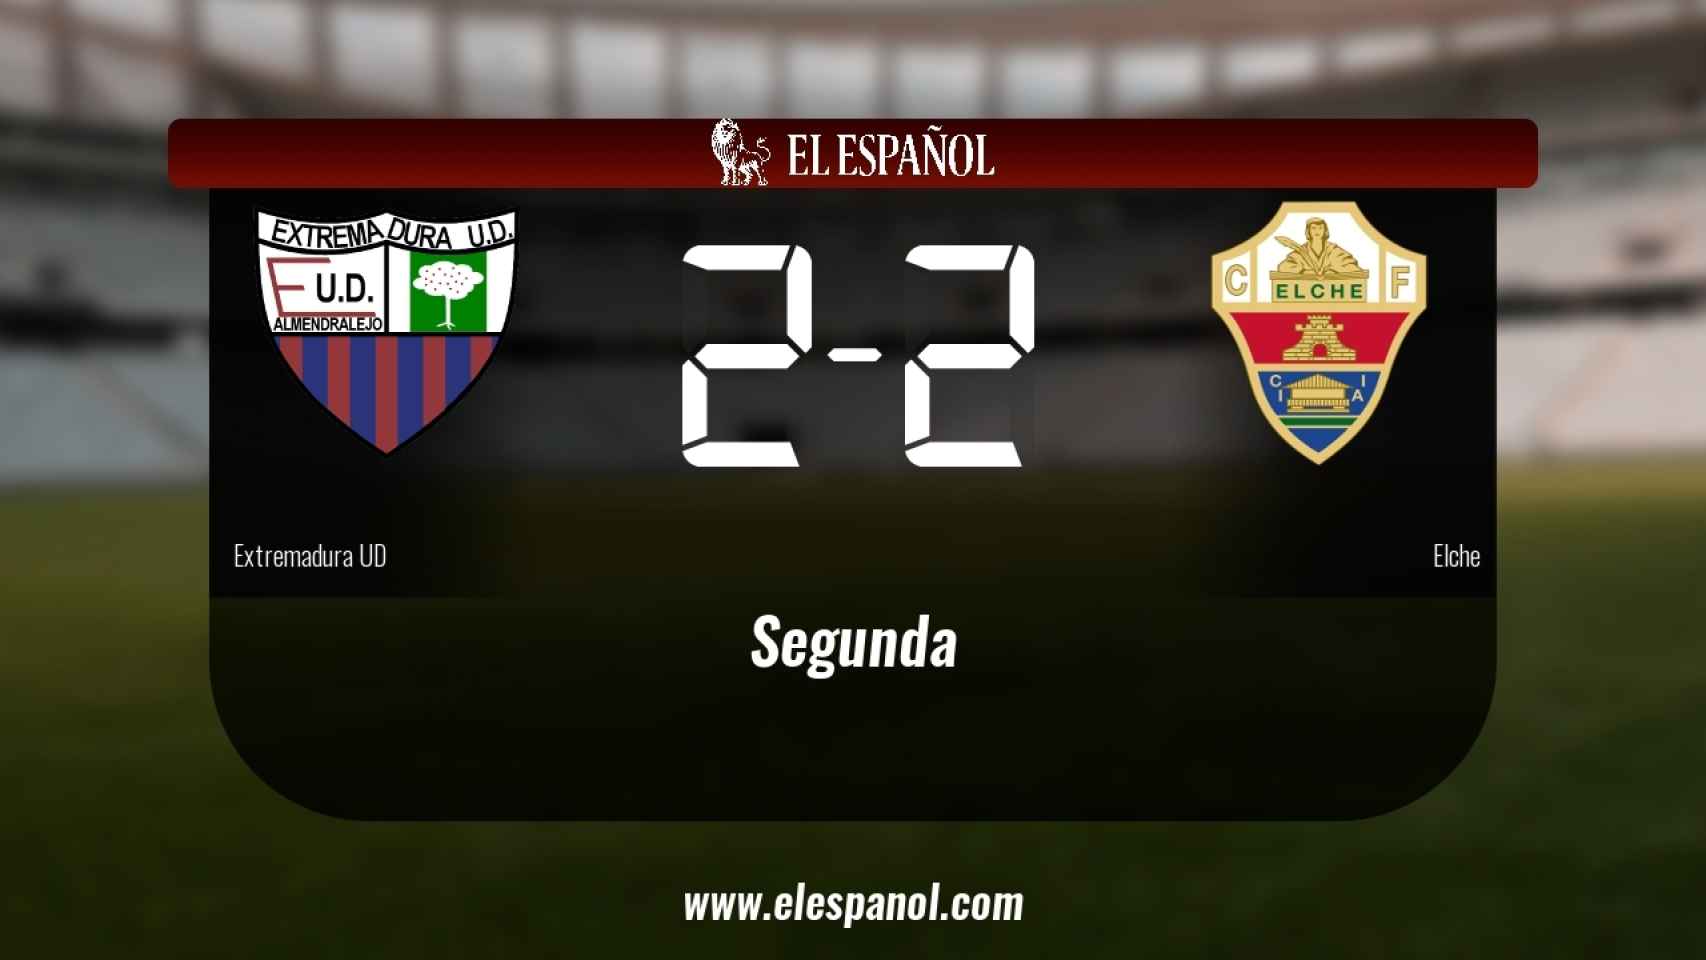 Reparto de puntos entre el Extremadura UD y el Elche, el marcador final fue 2-2